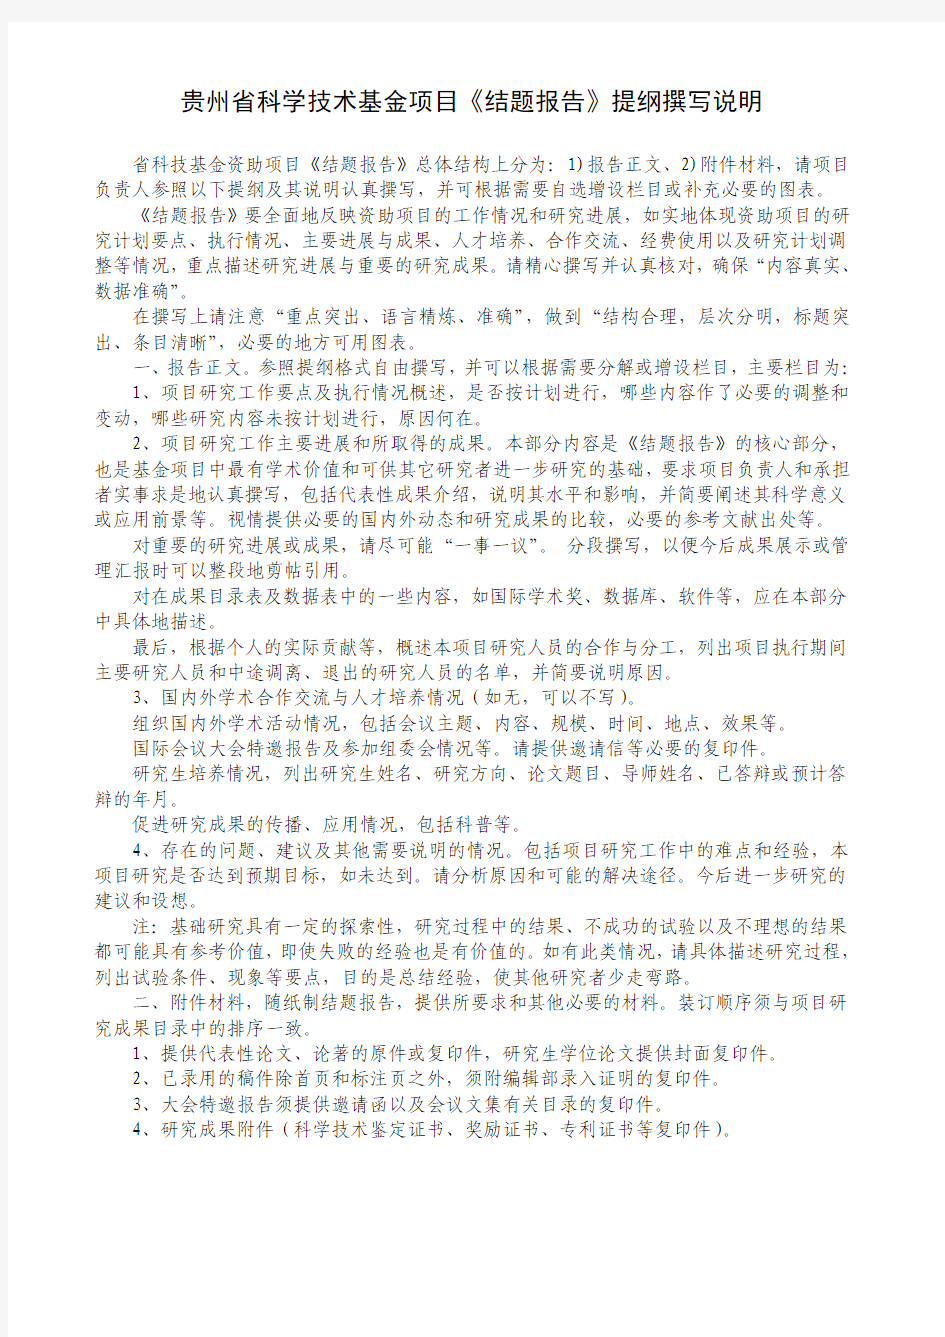 贵州省科学技术基金项目验收1——《结题报告》提纲撰写说明